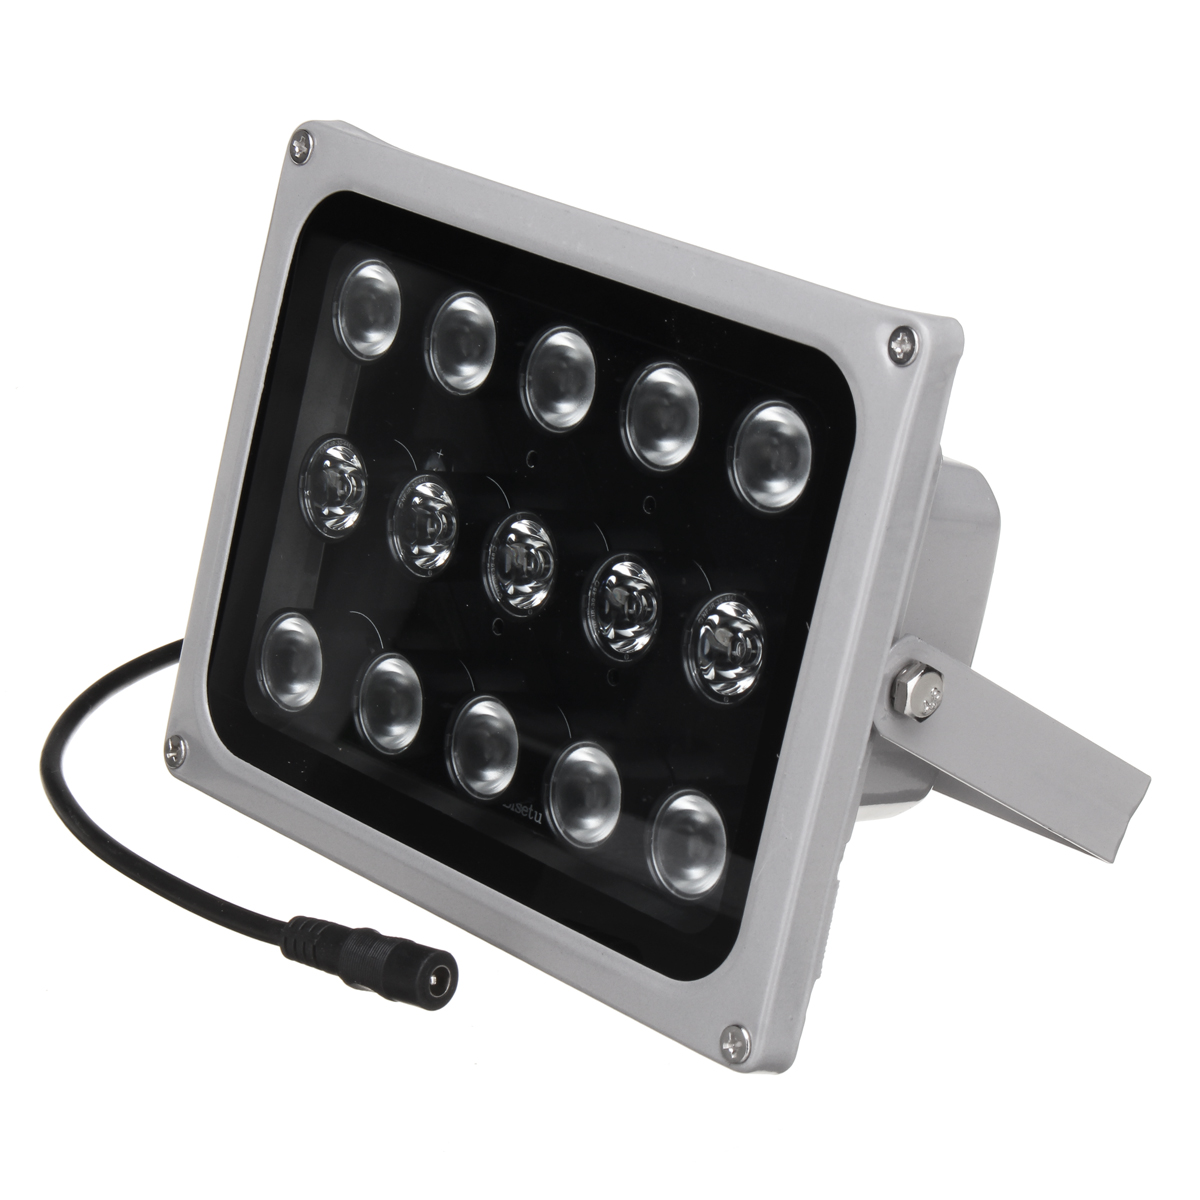 

15pcs LED Night Vision IR Infrared Illuminator Light 12V for CCTV Security Camera IP65